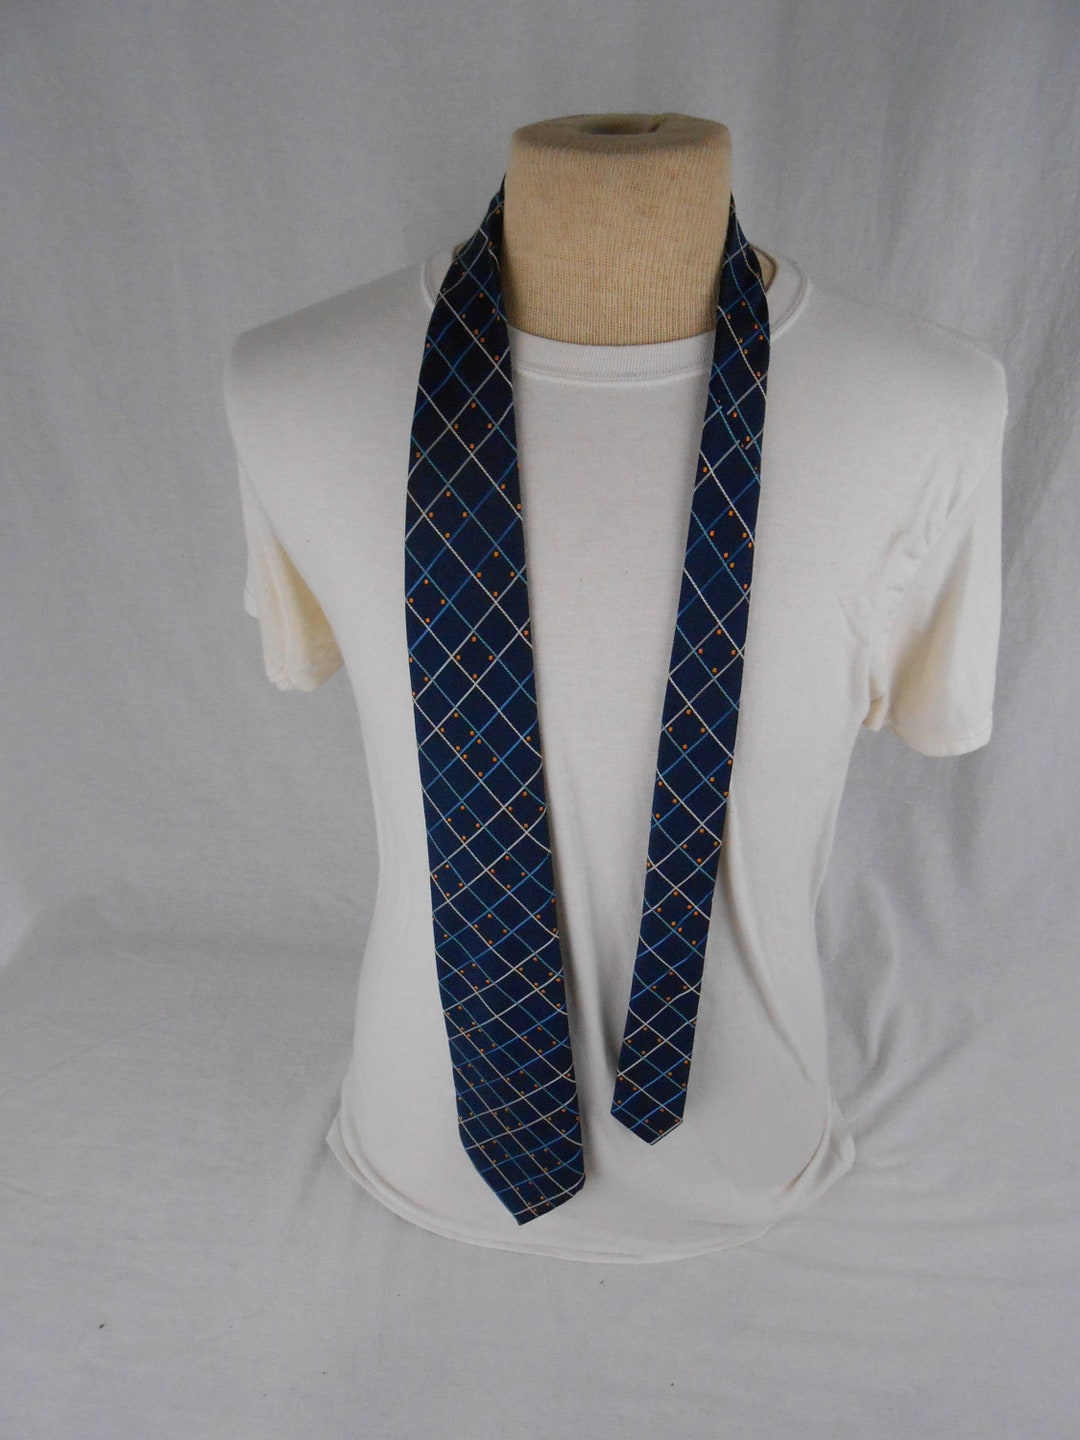 Vintage 1970's Tie by Resisto - Etsy